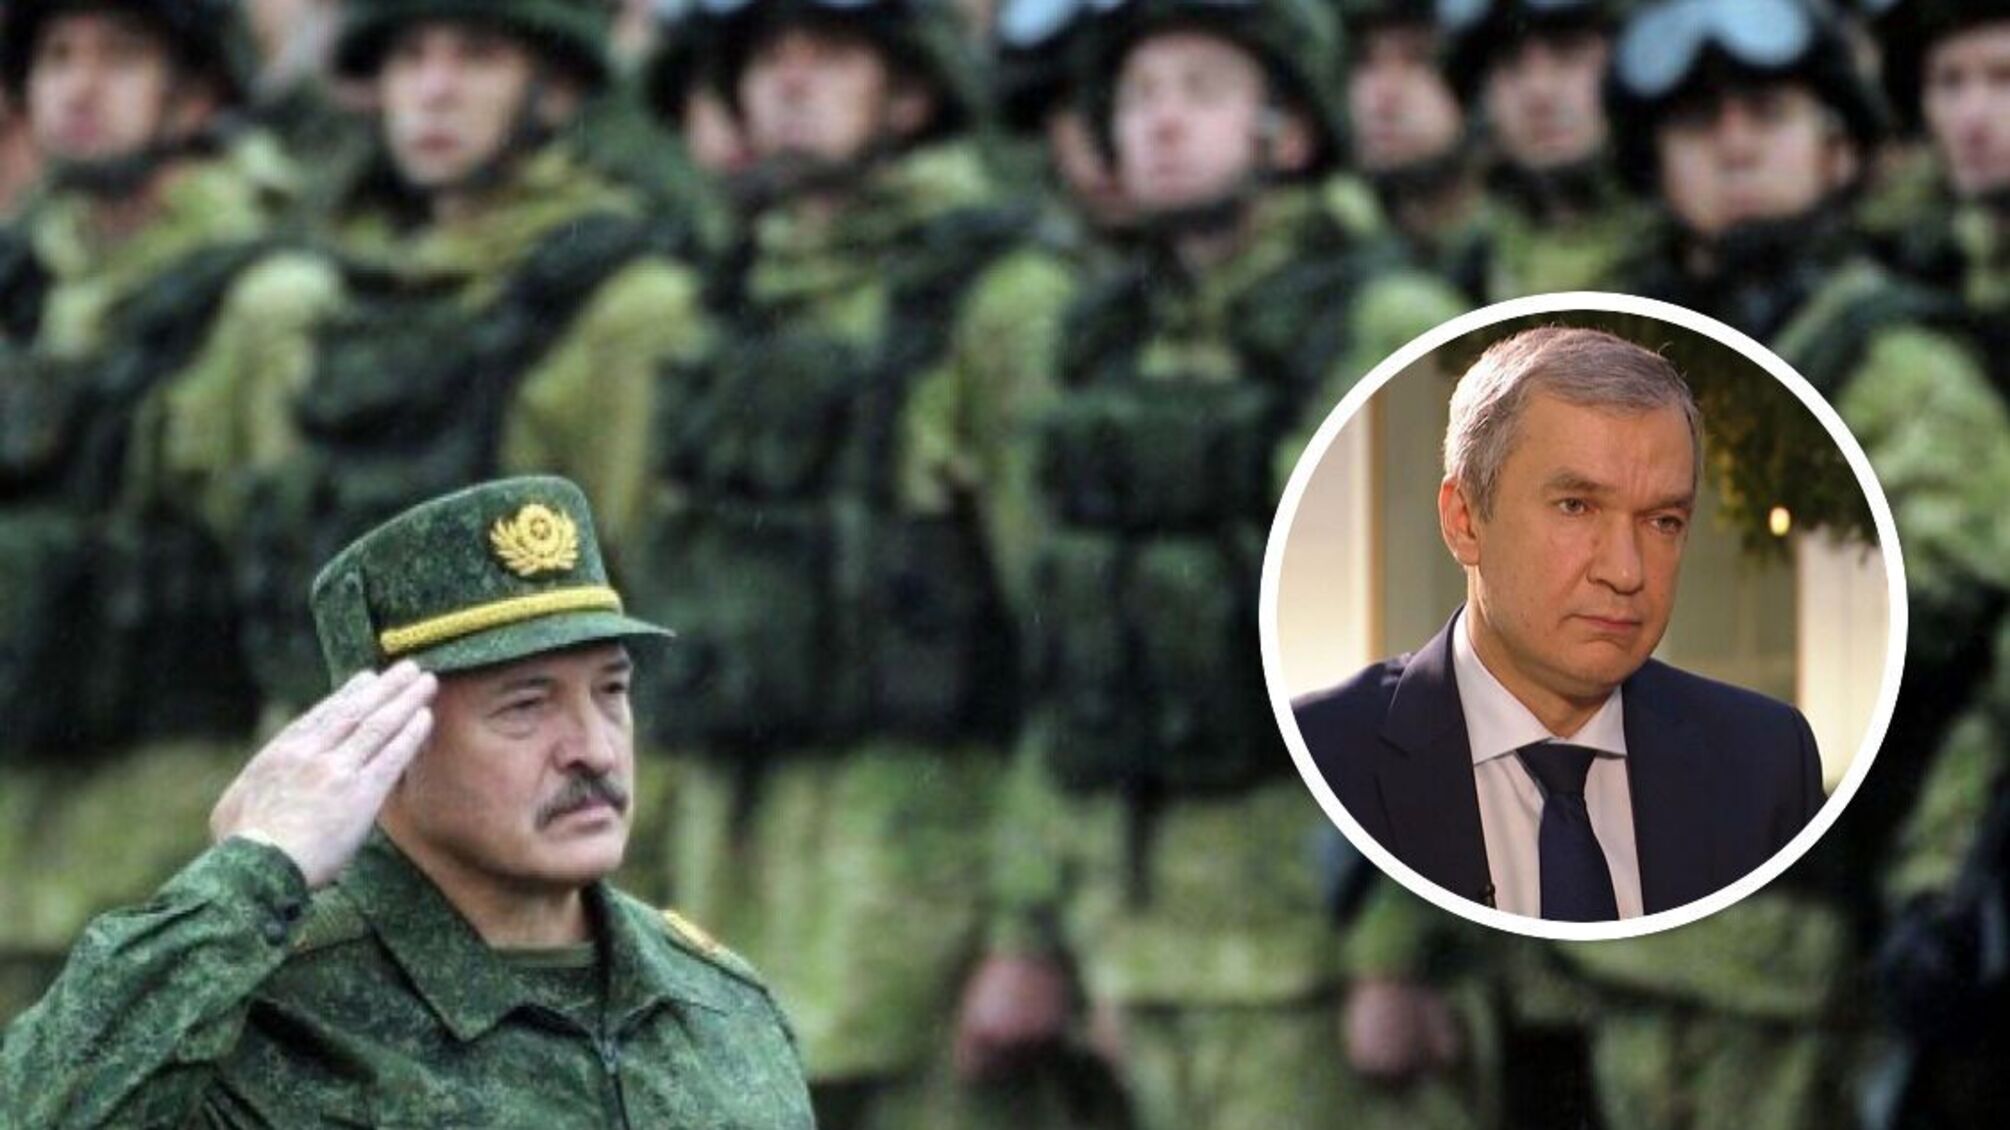 Беларусь готовится к полномасштабной войне – член оппозиционного правительства Латушко